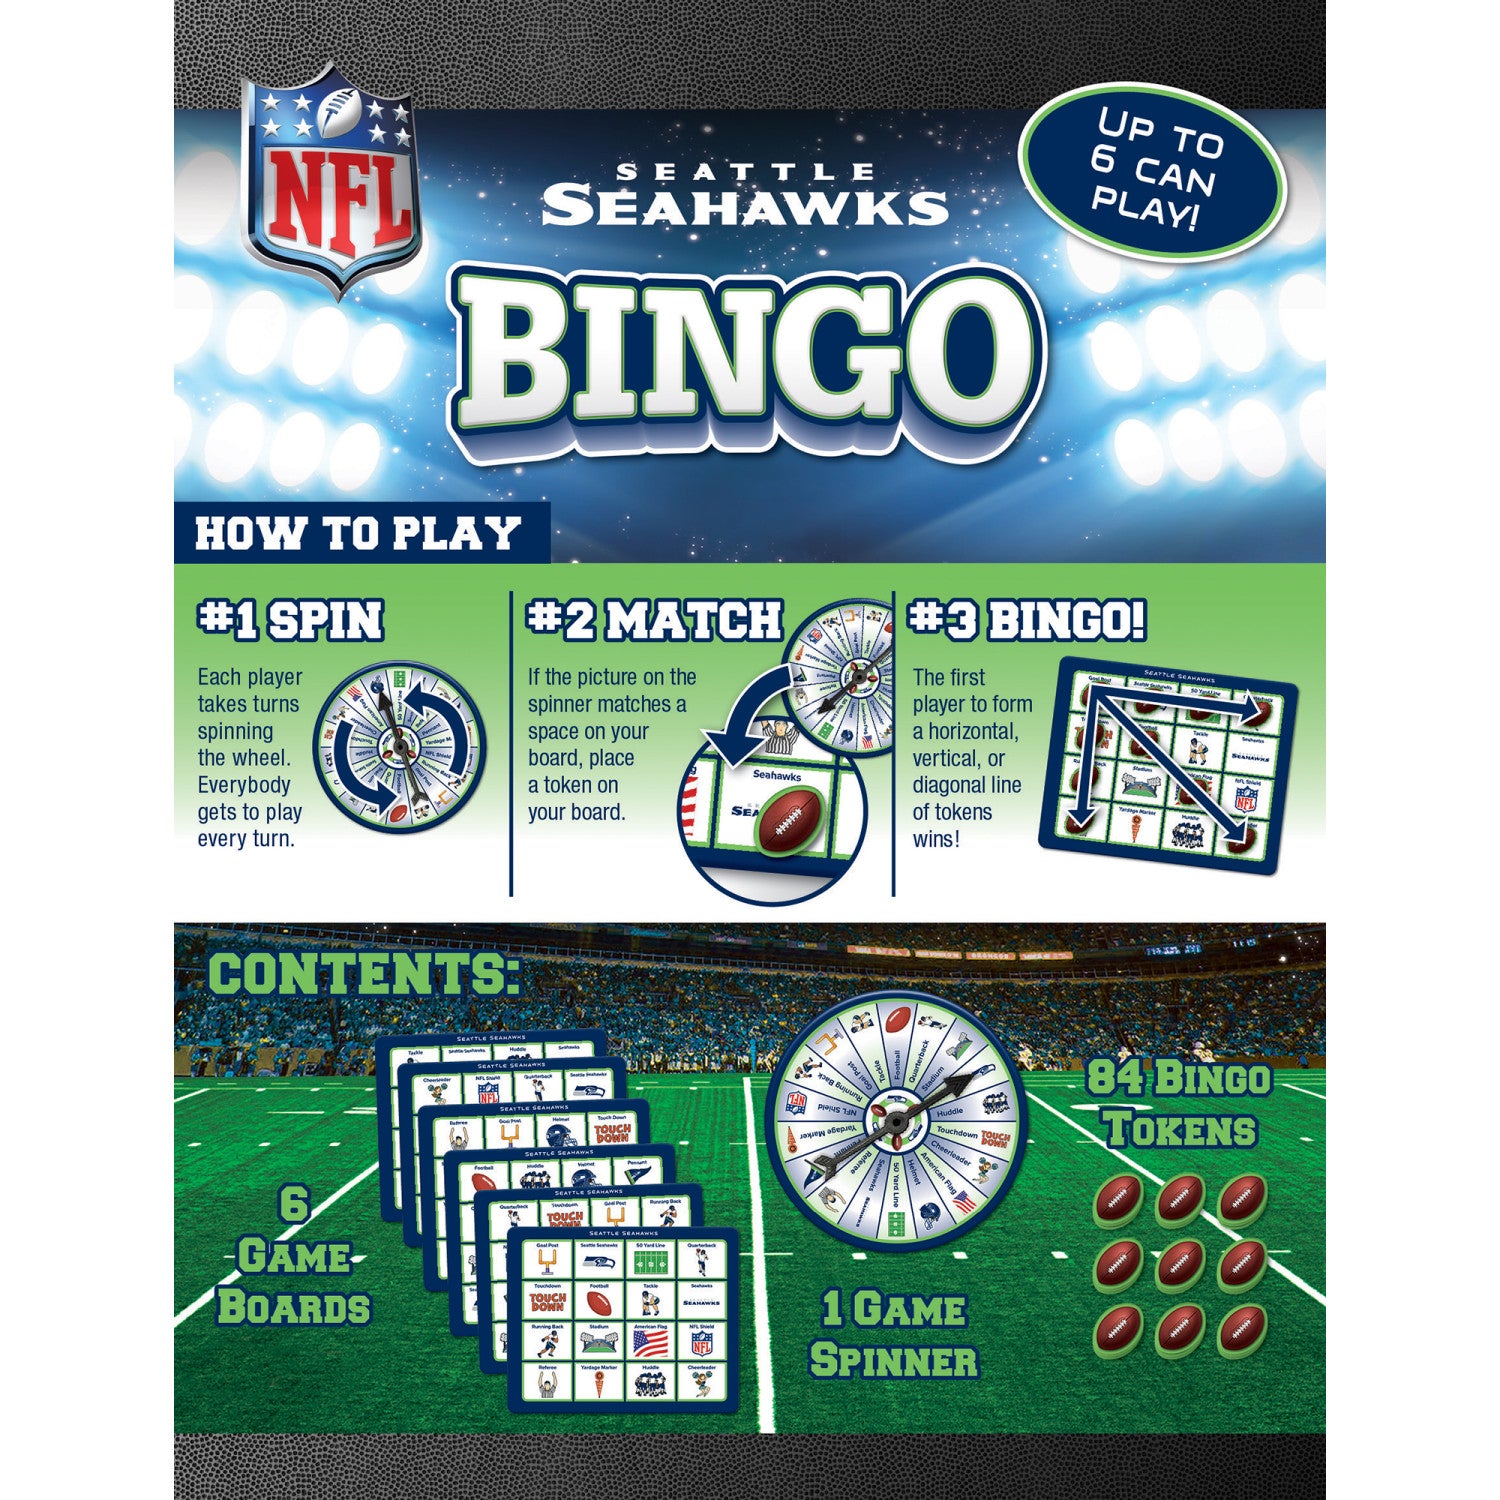 Seattle Seahawks Bingo Game